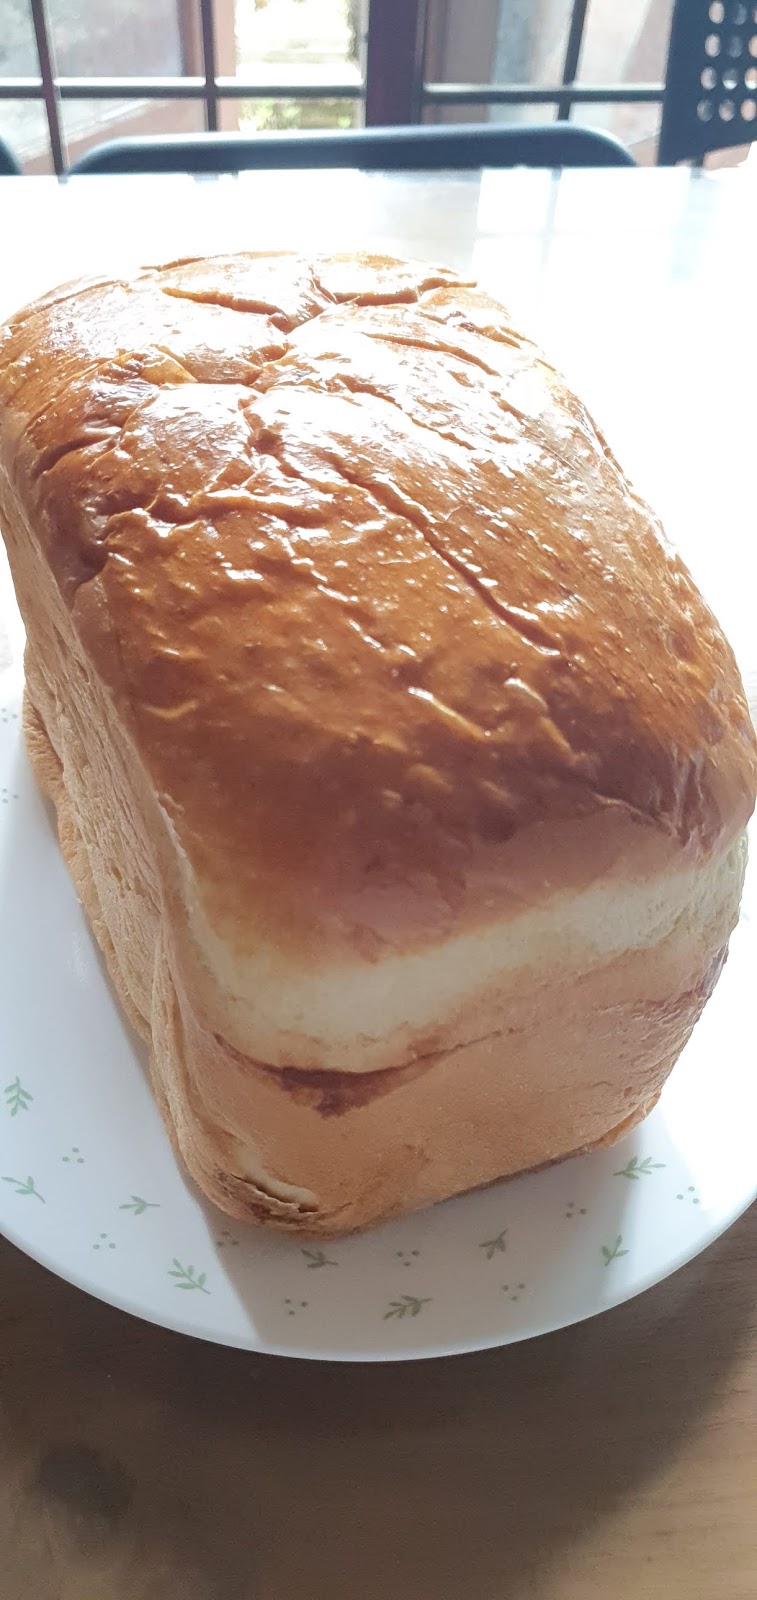 matahati: Buat Roti Pakai Bread Maker